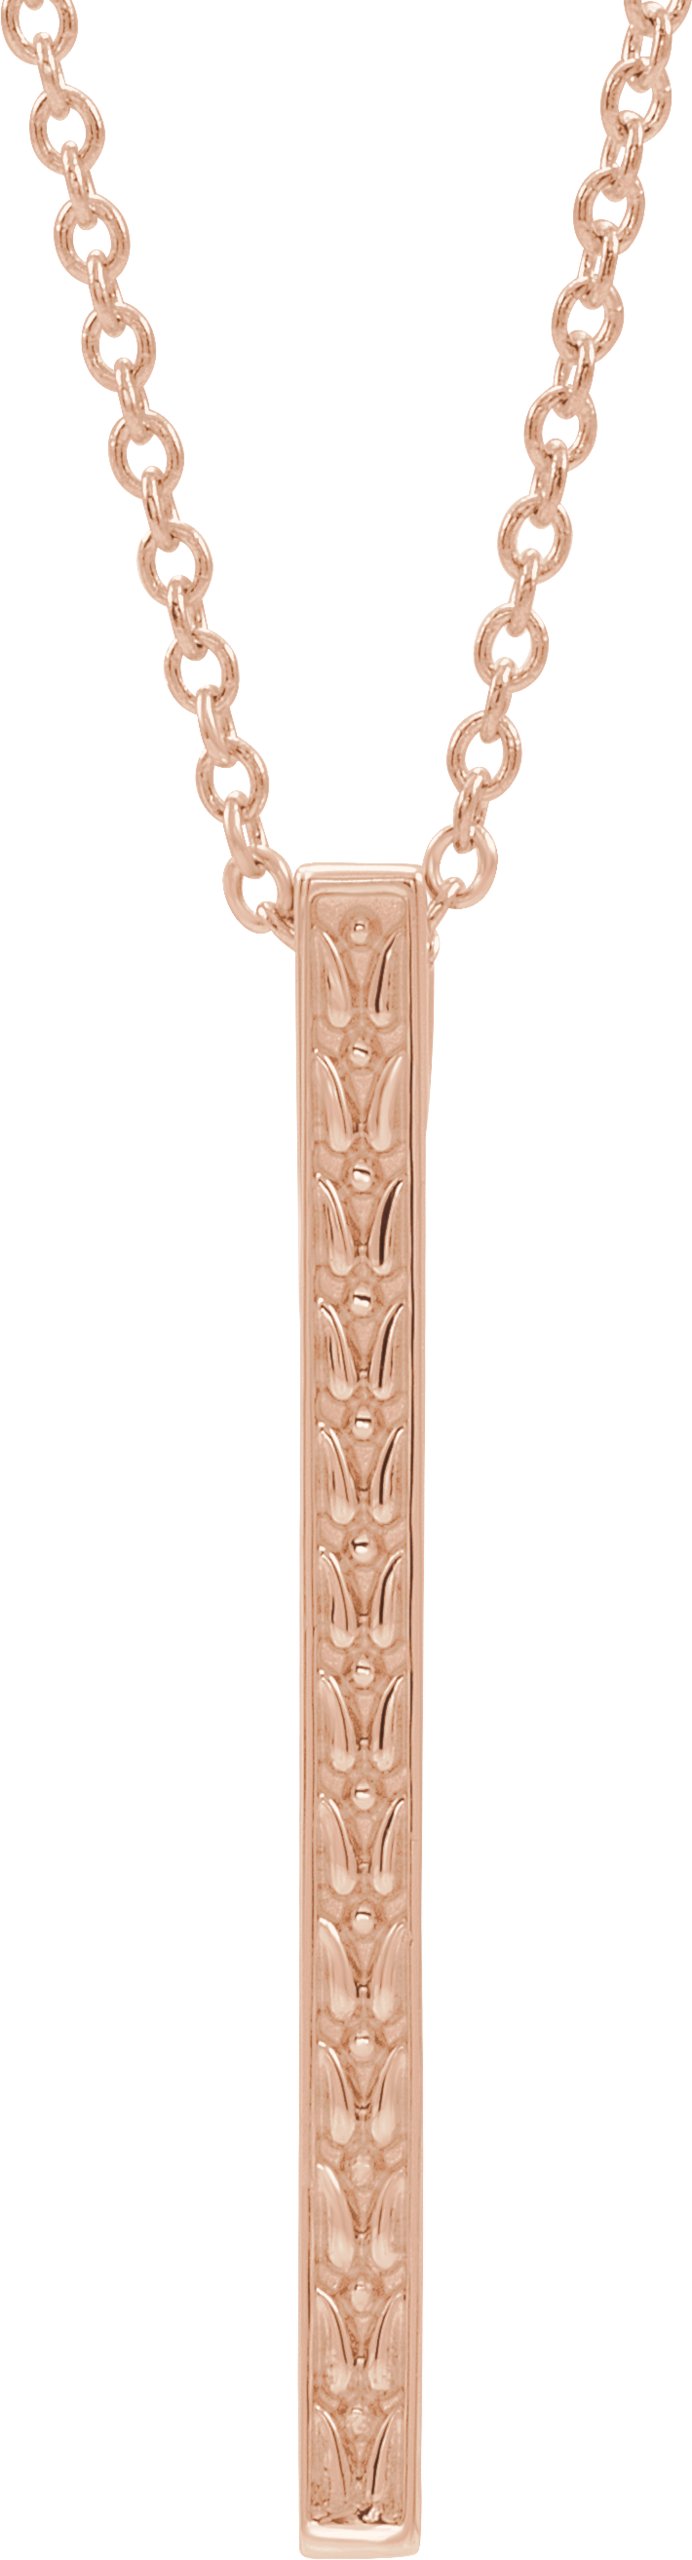 14K Rose Sculptural-Inspired Bar 24" Necklace